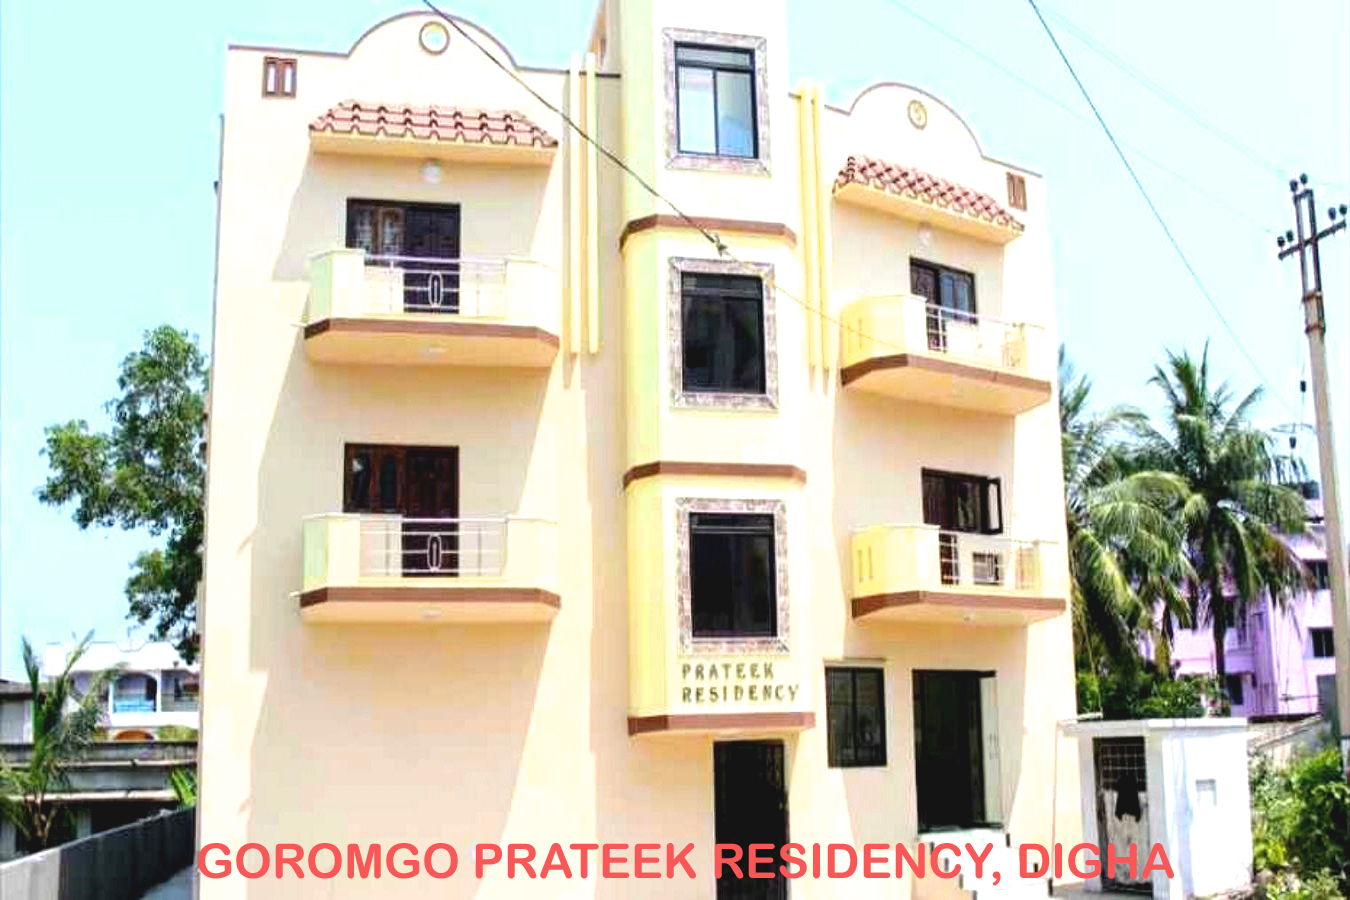 Goroomgo Prateek Residency Digha